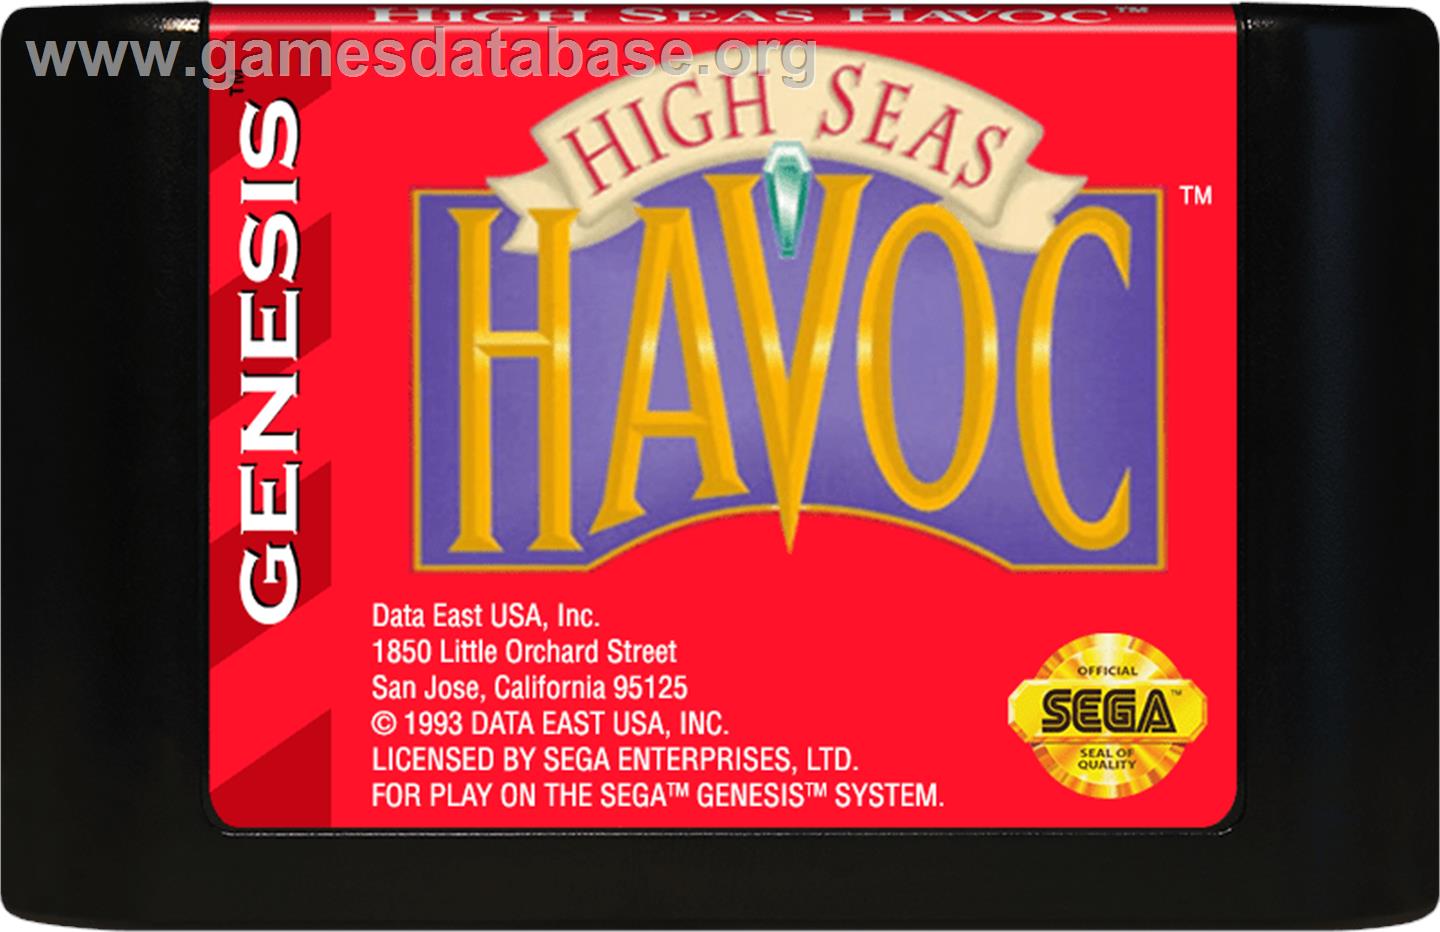 High Seas Havoc - Sega Genesis - Artwork - Cartridge